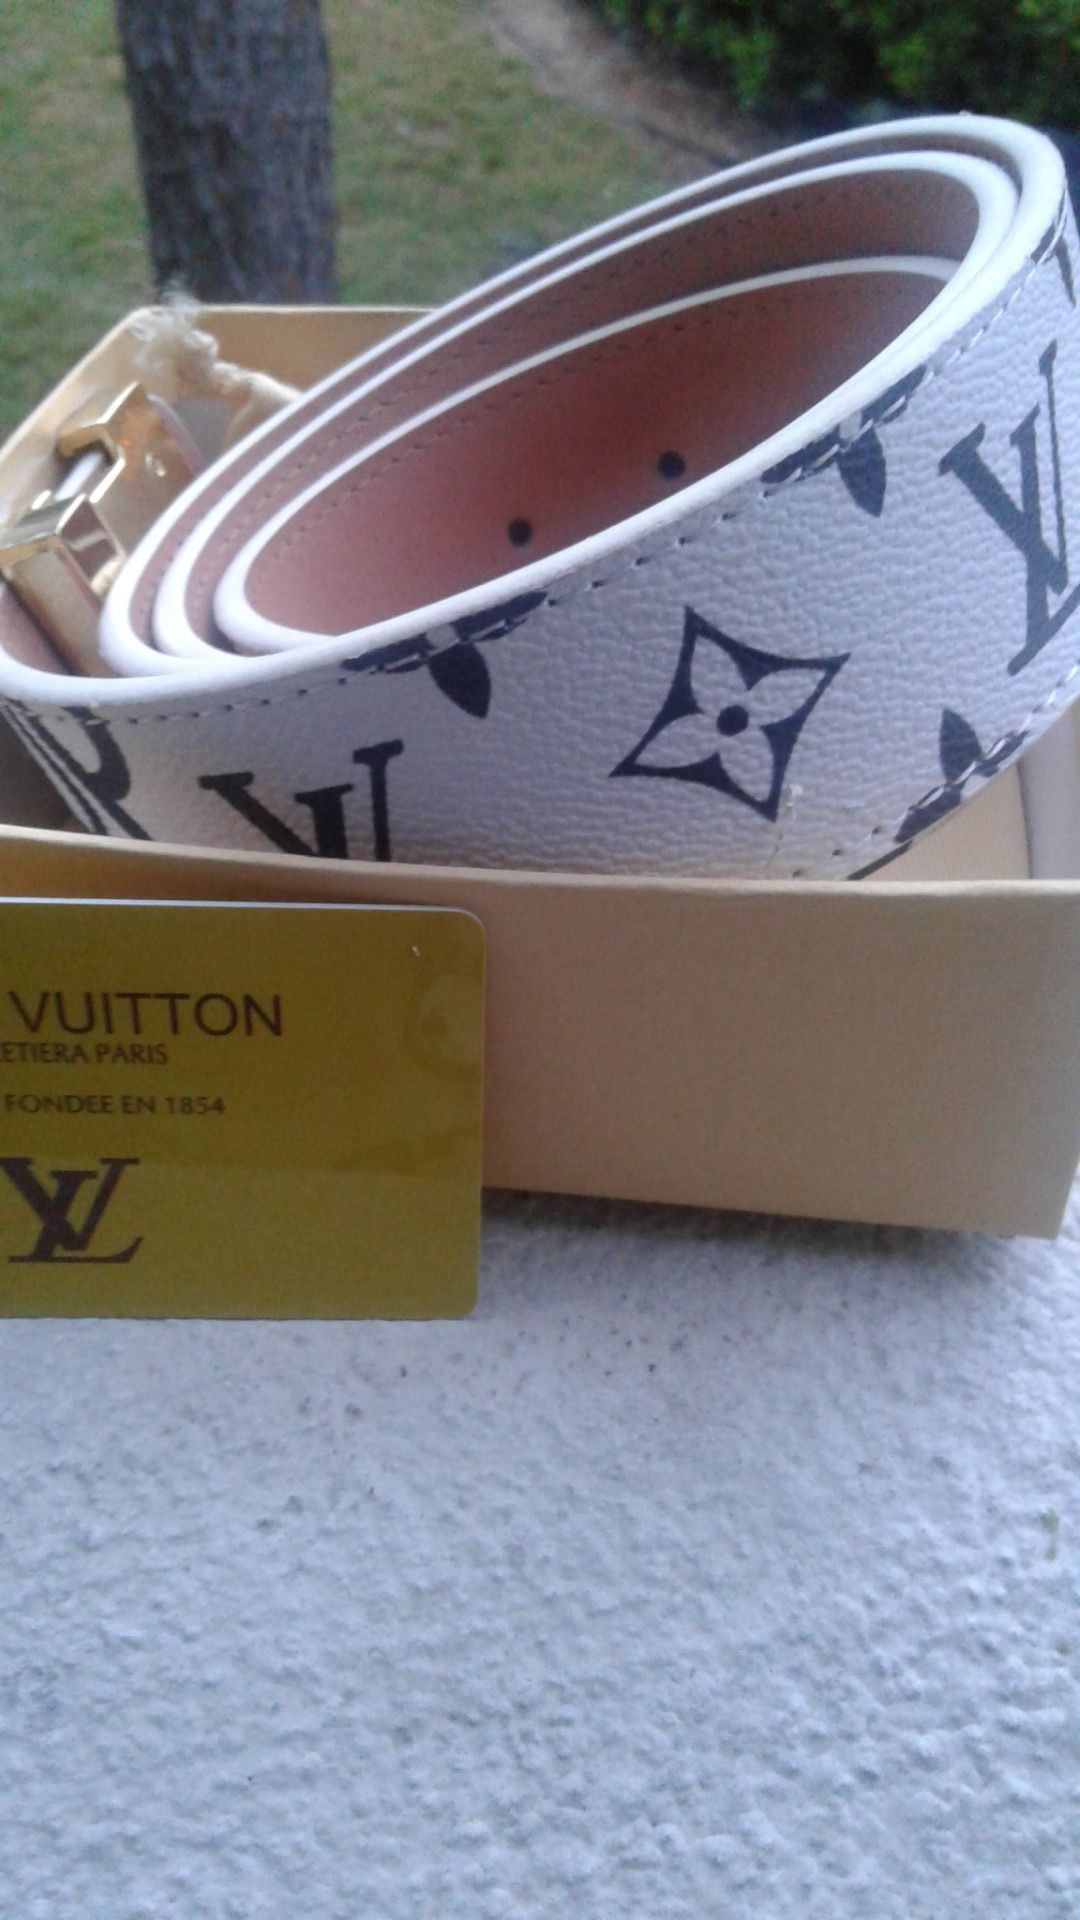 Louis Vuitton Belt for Sale in Orlando, FL - OfferUp